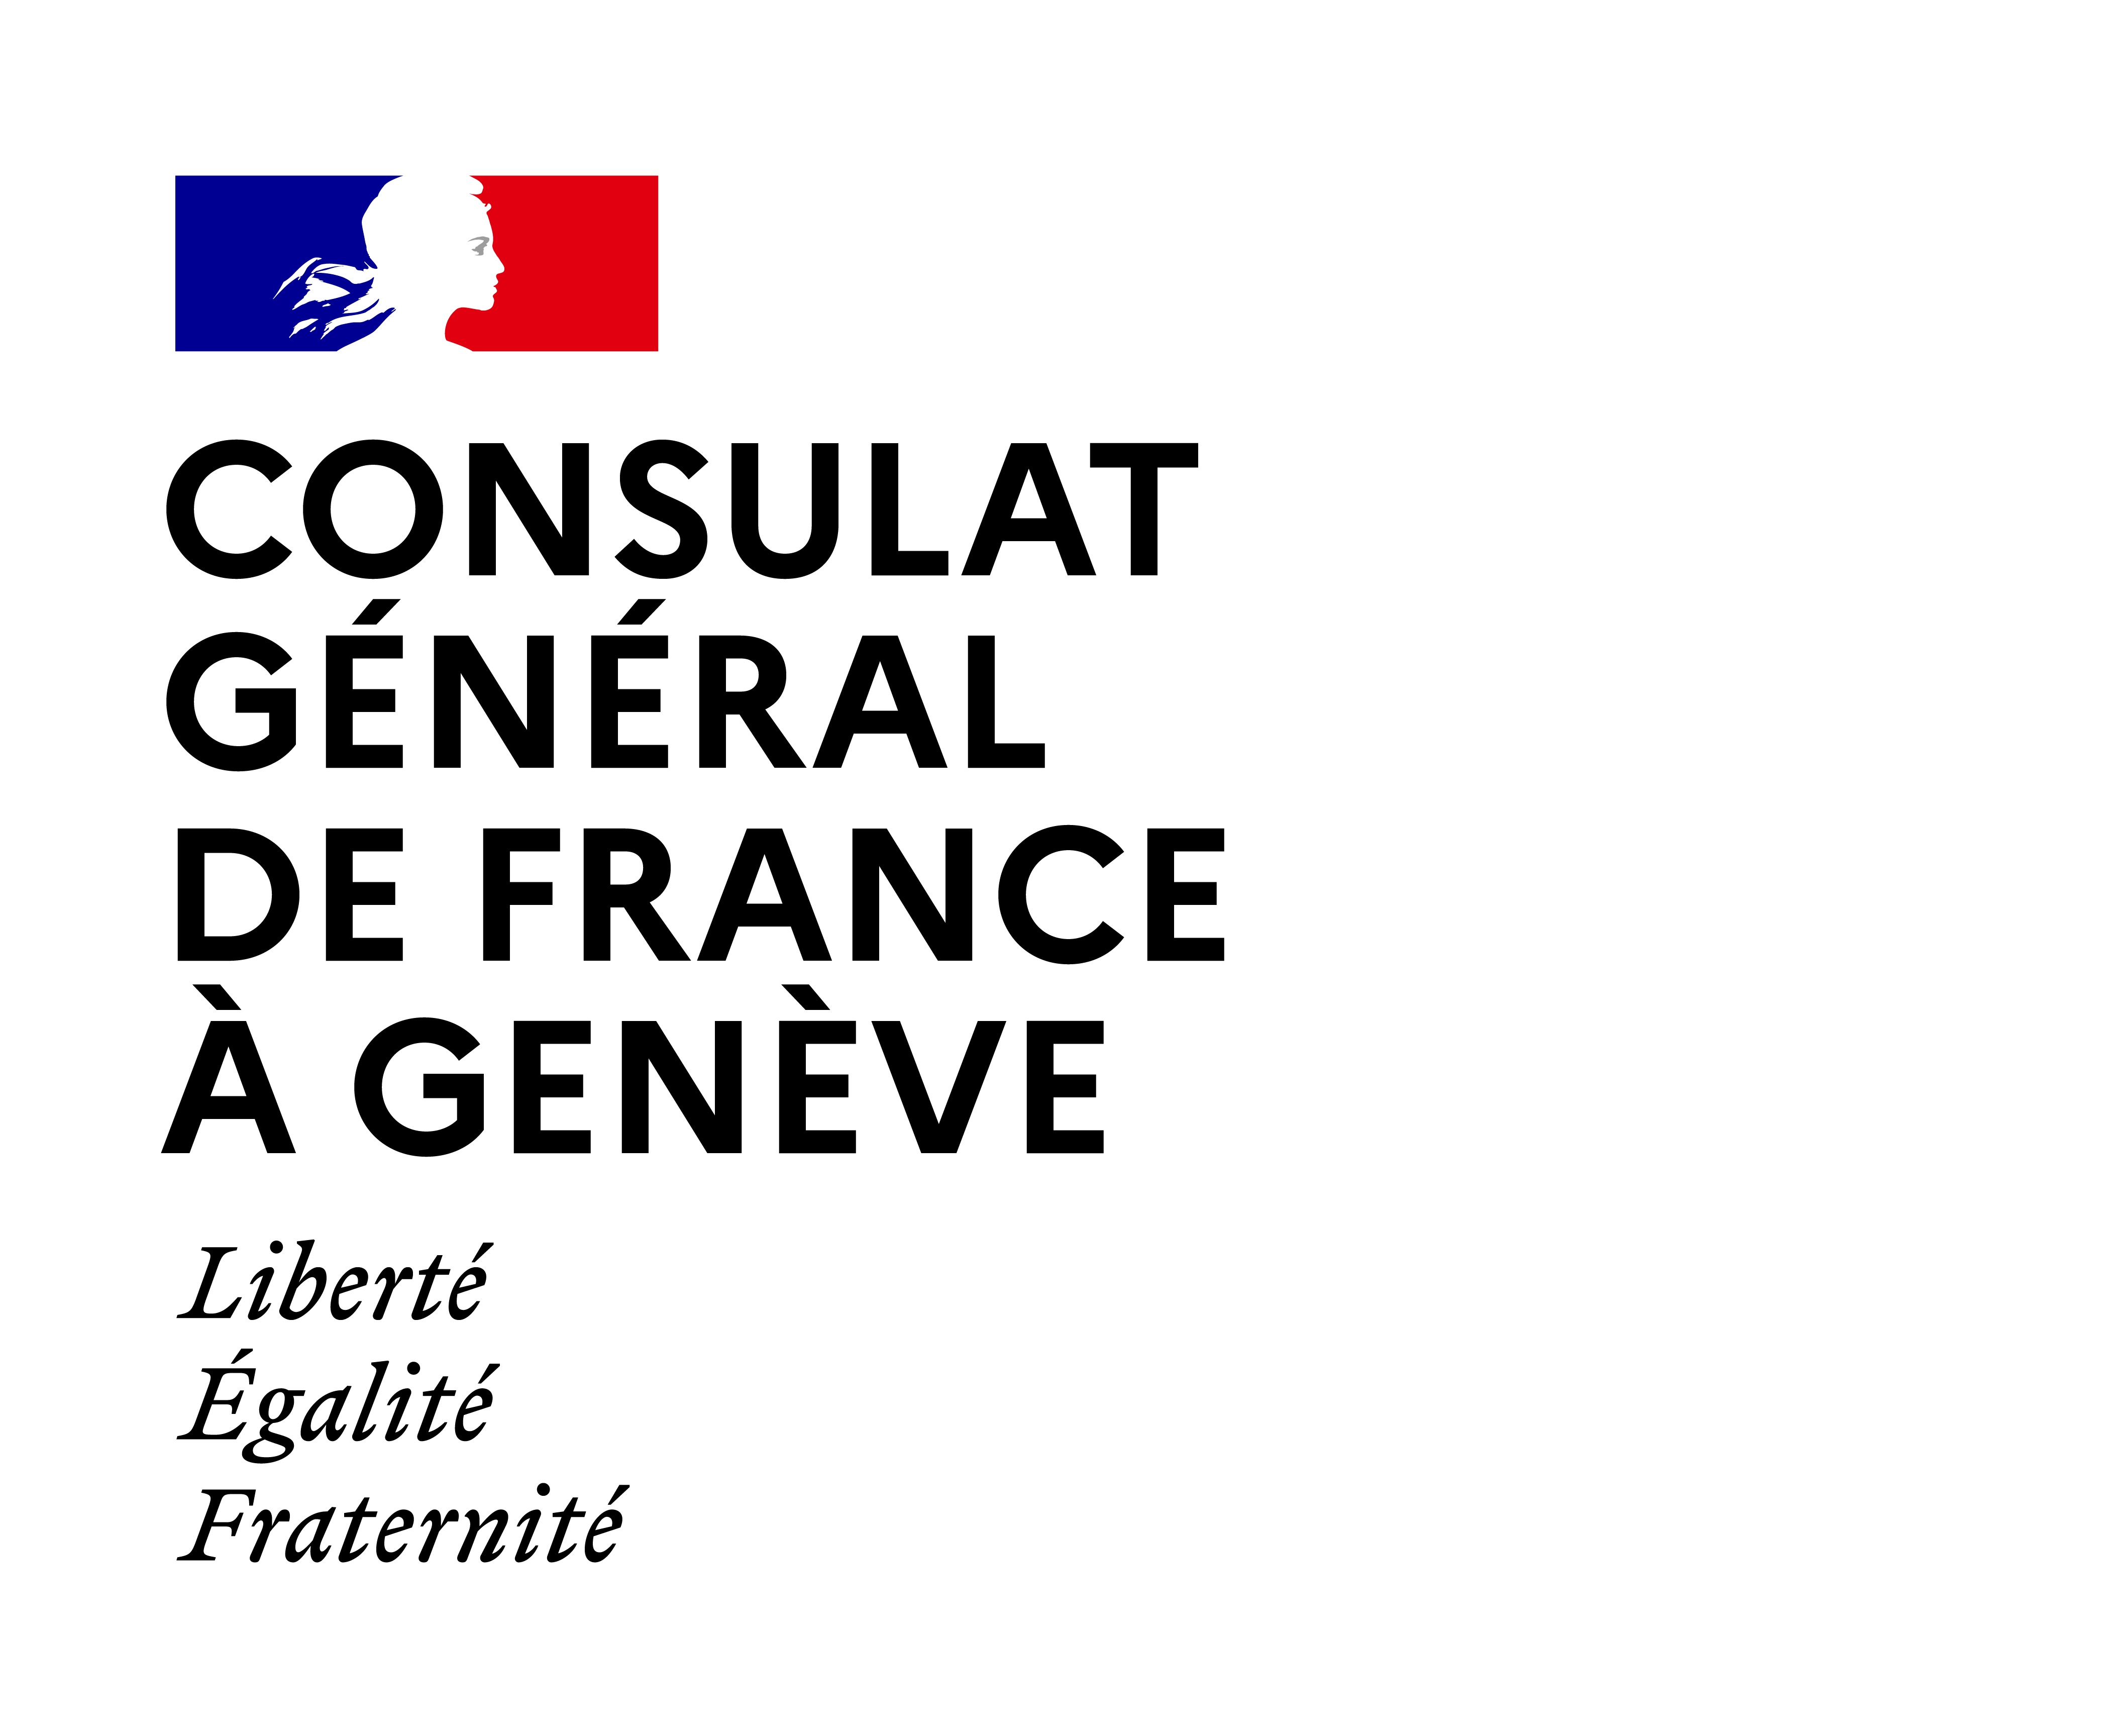 Consulat général de France à Genève